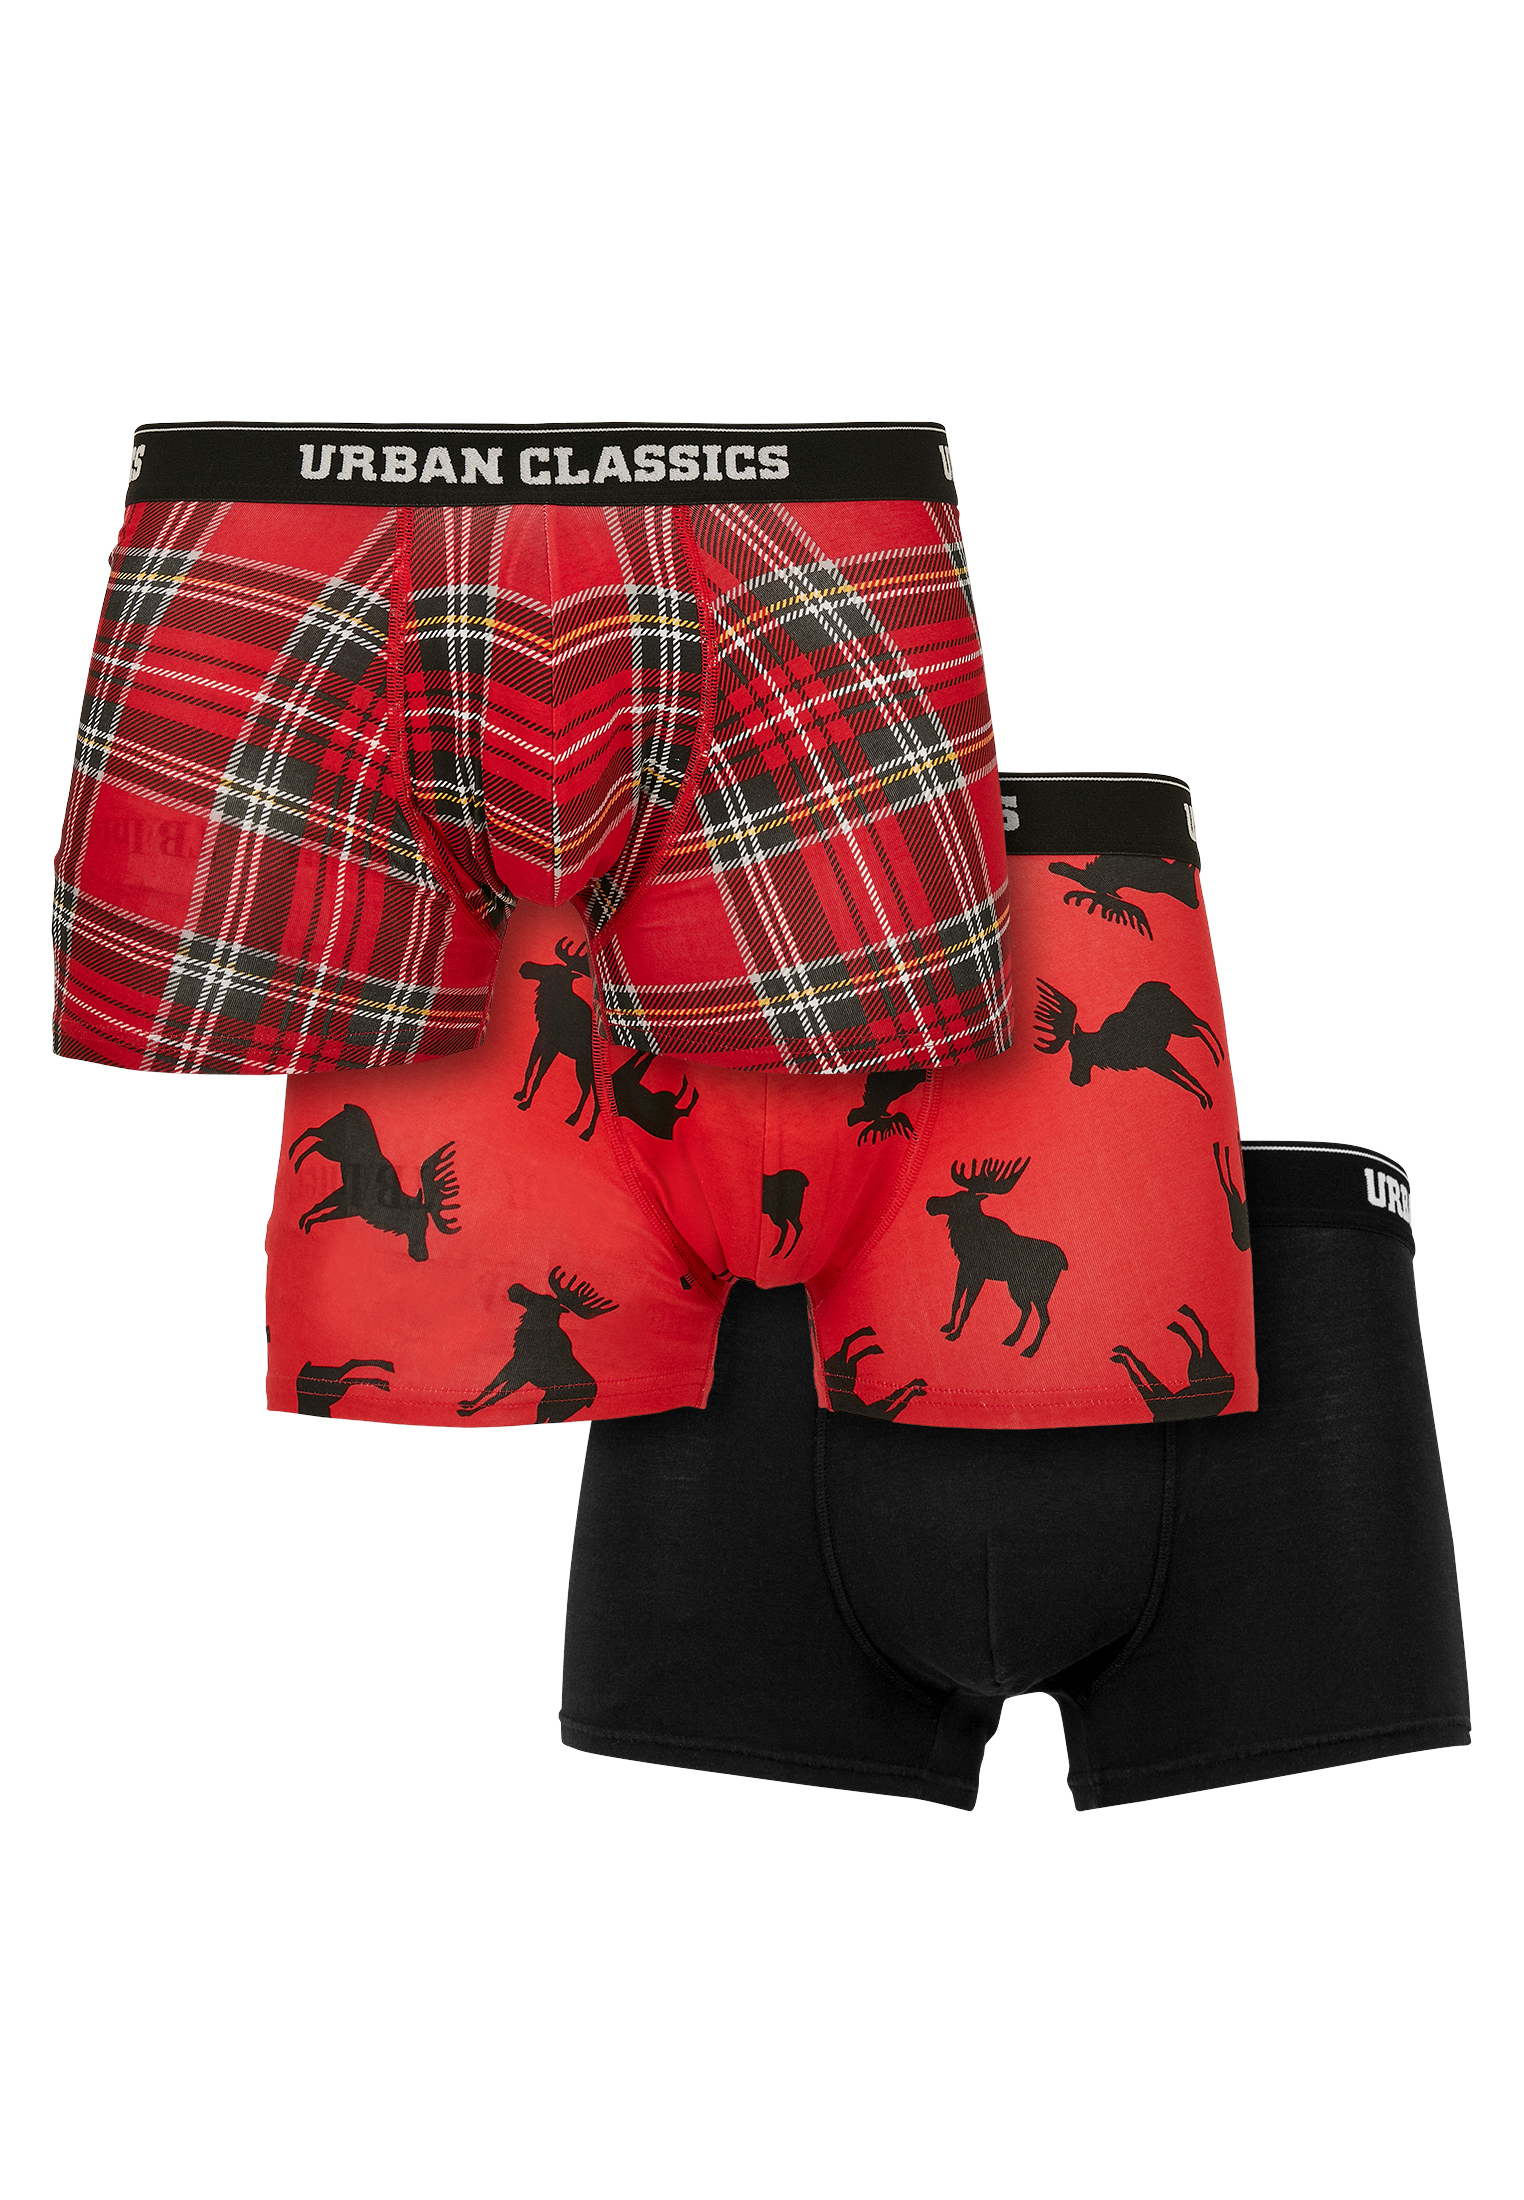 Боксеры Urban Classics Boxershorts, цвет red plaid aop+moose aop+blk château lestillon bordeaux aop